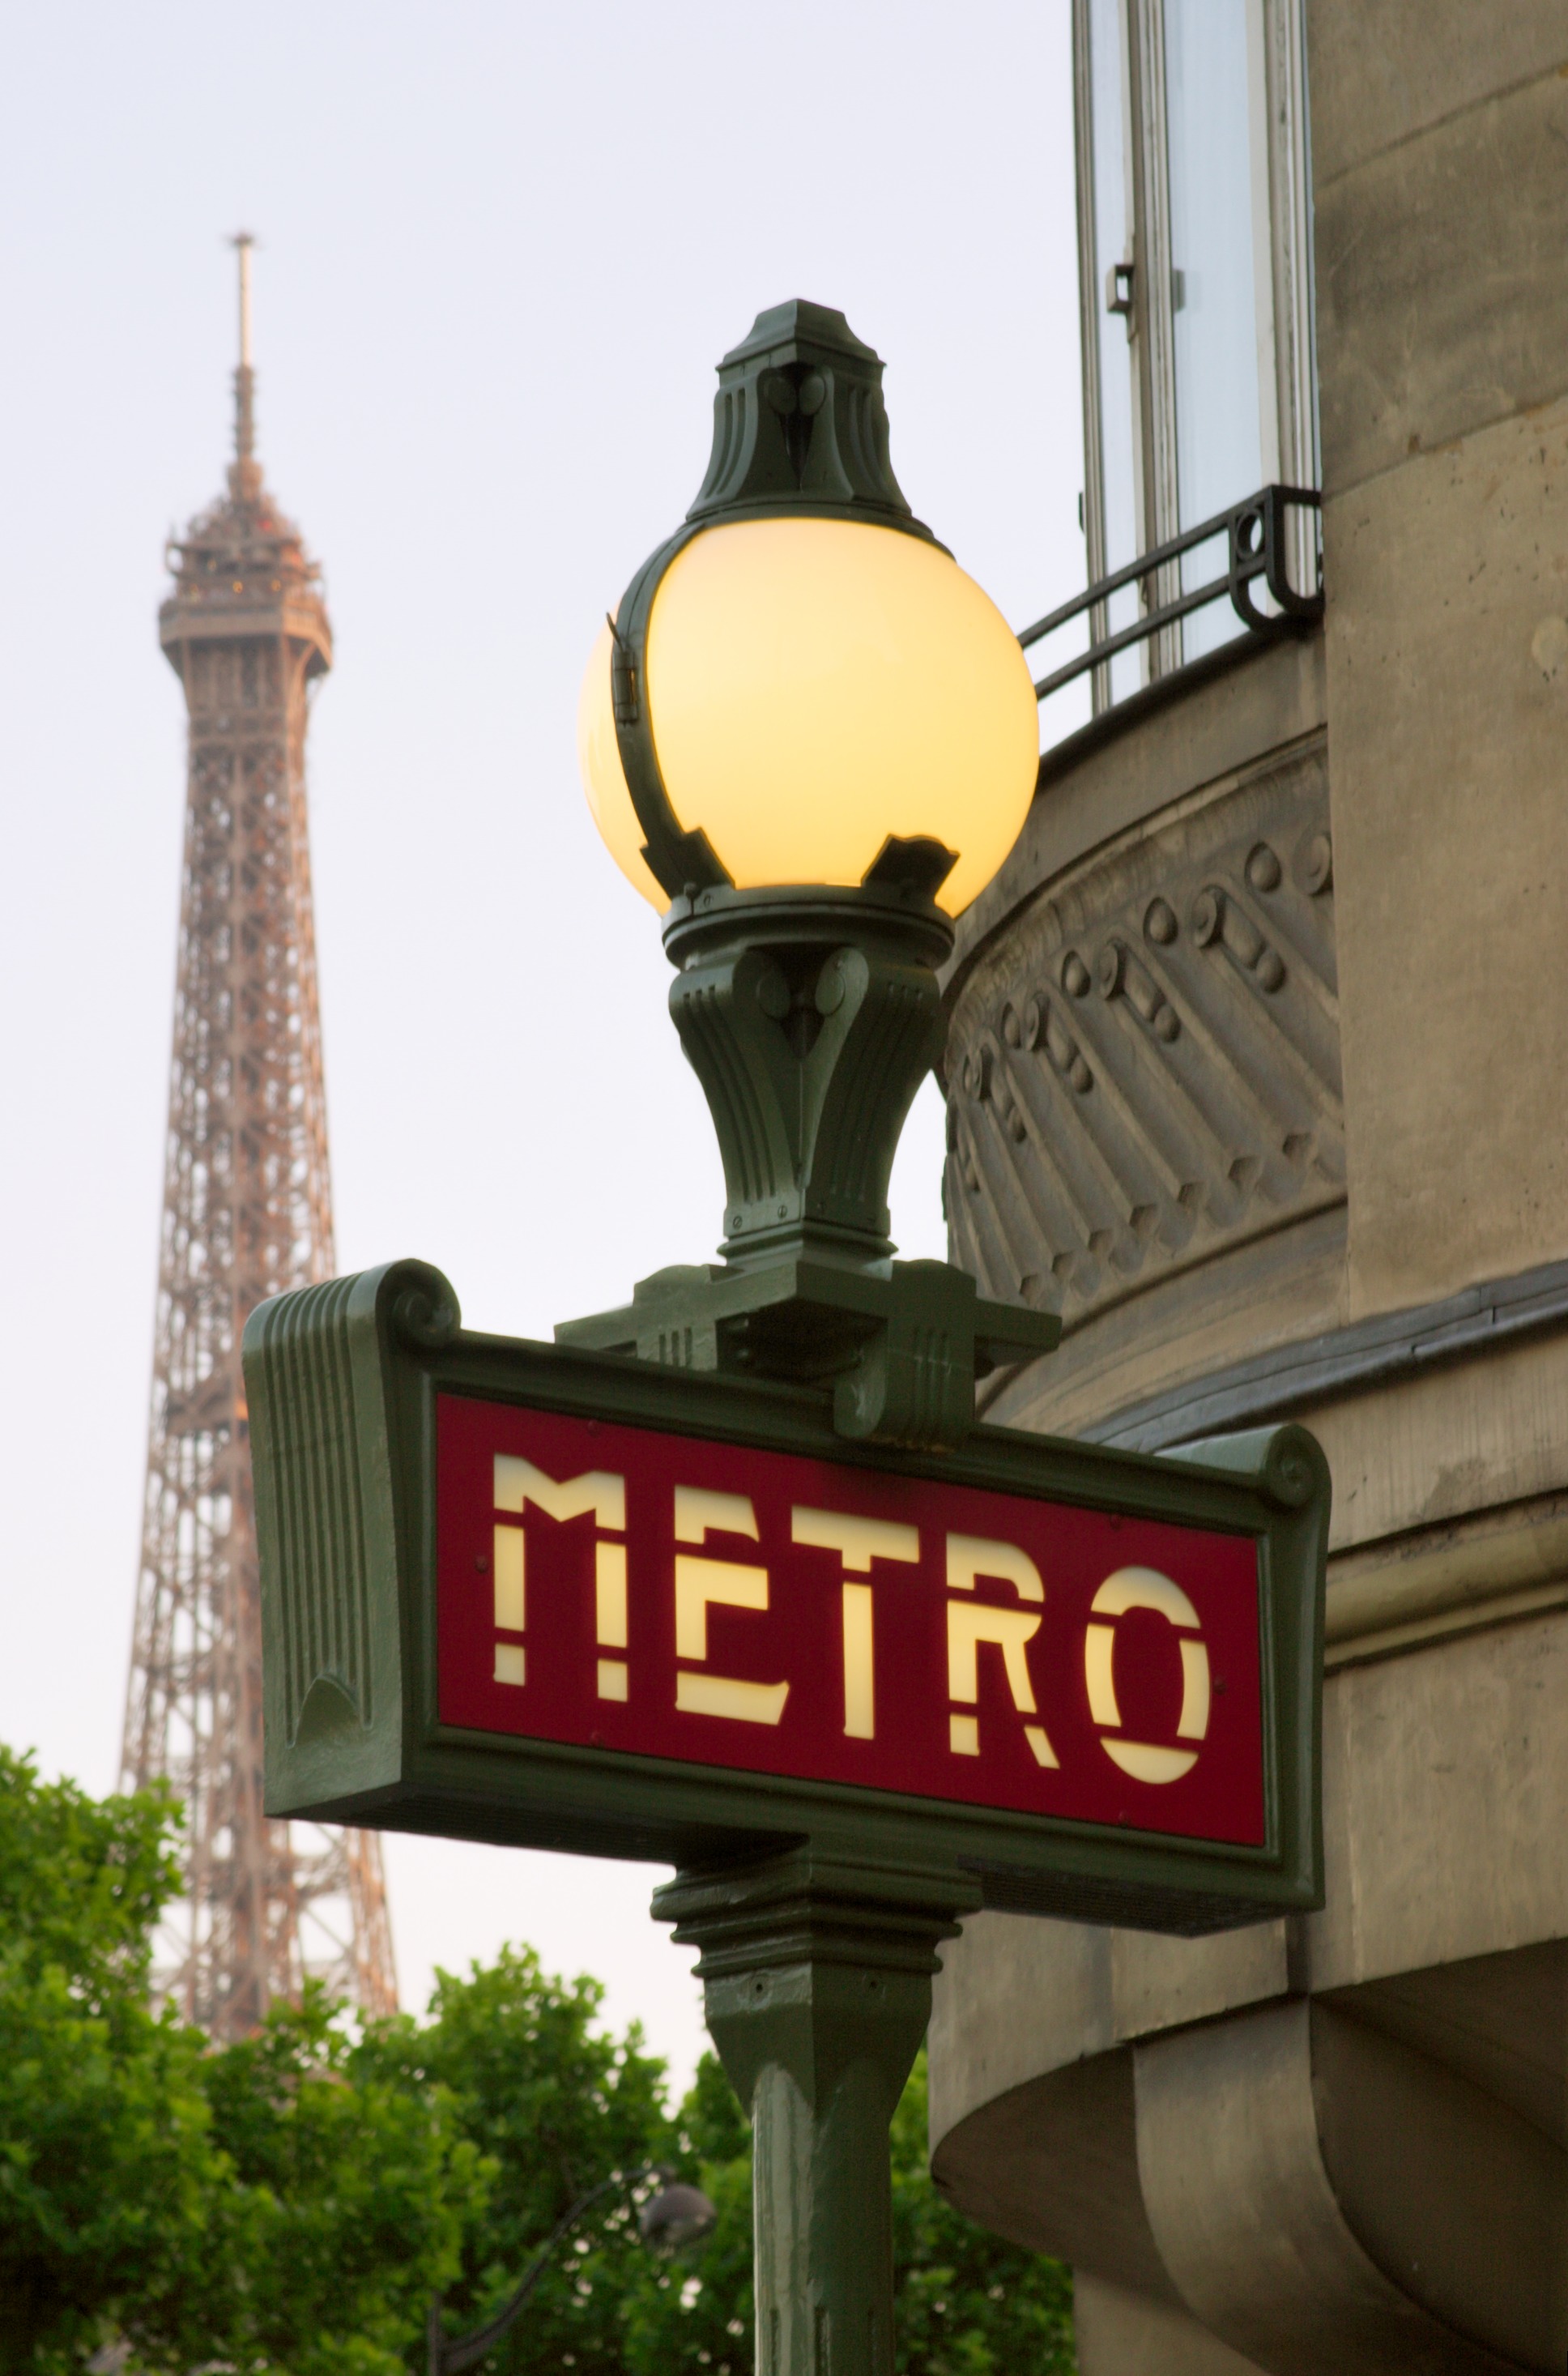 Paris_Metro_sign (1)